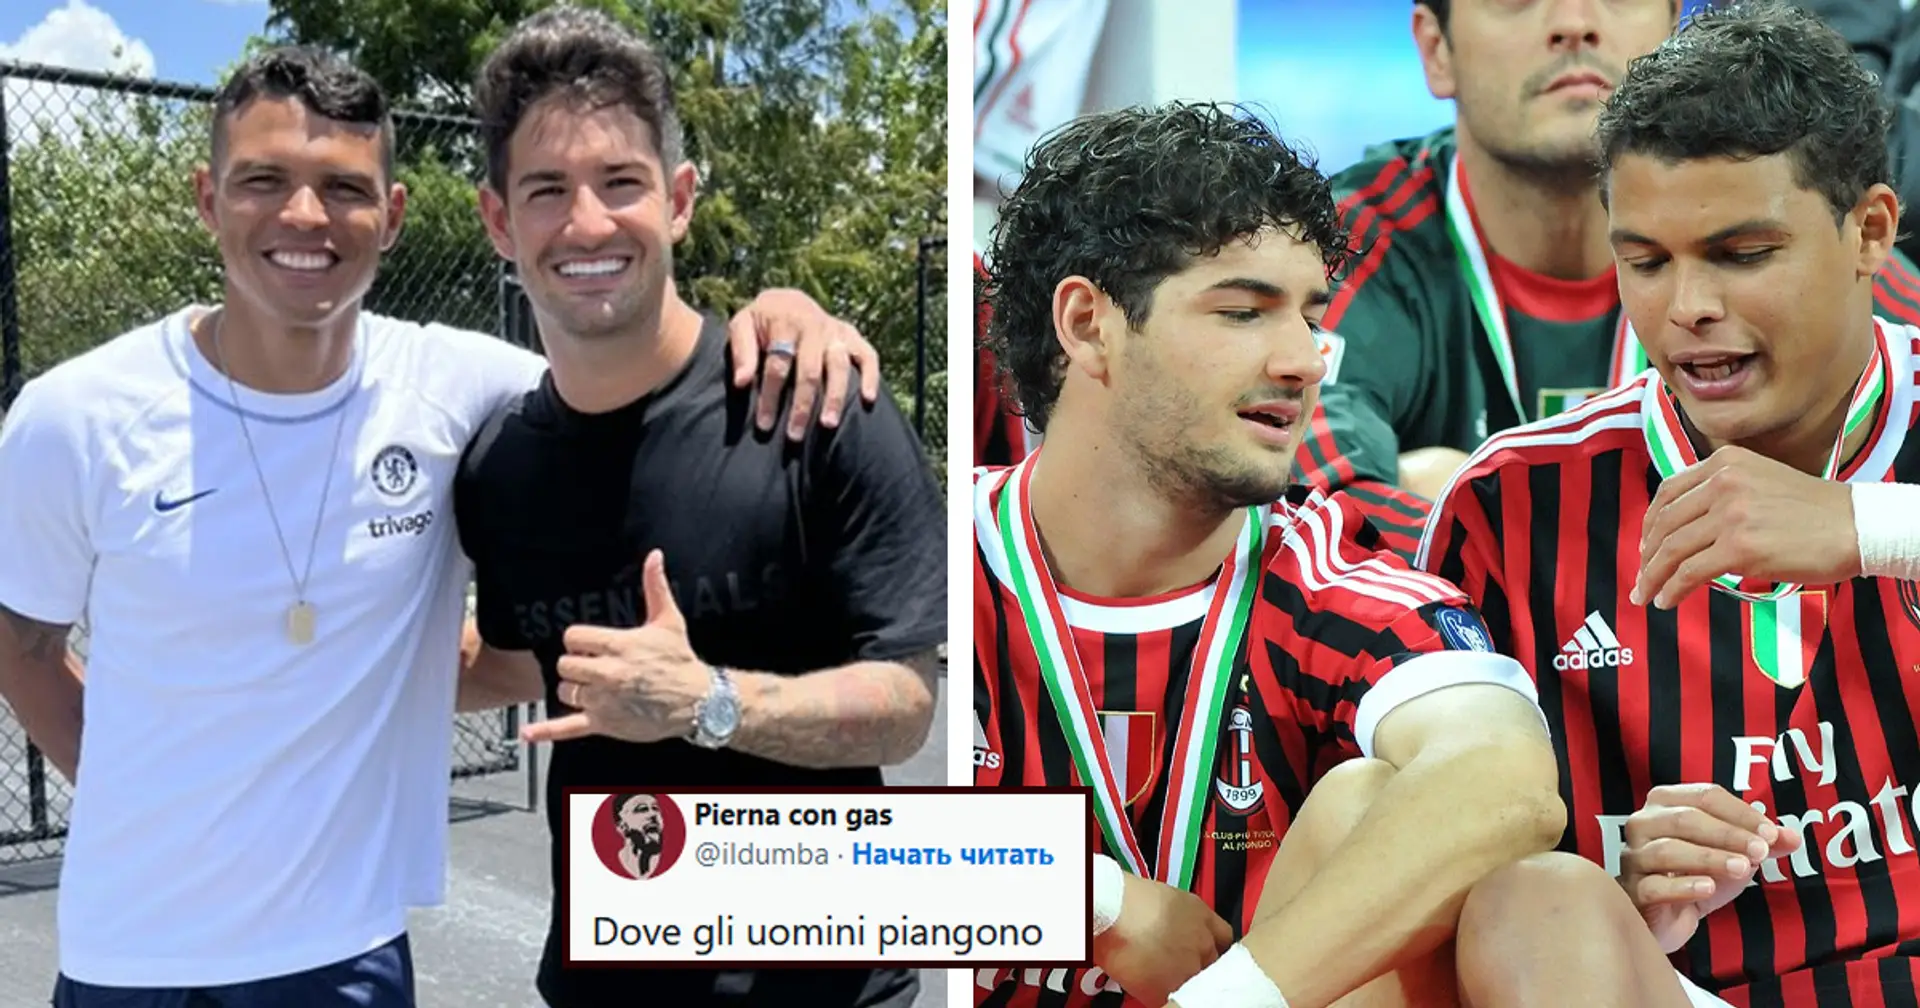 "Dove gli uomini piangono": il Milan ricorda Pato e Thiago Silva sui social, tifosi rossoneri nostalgici